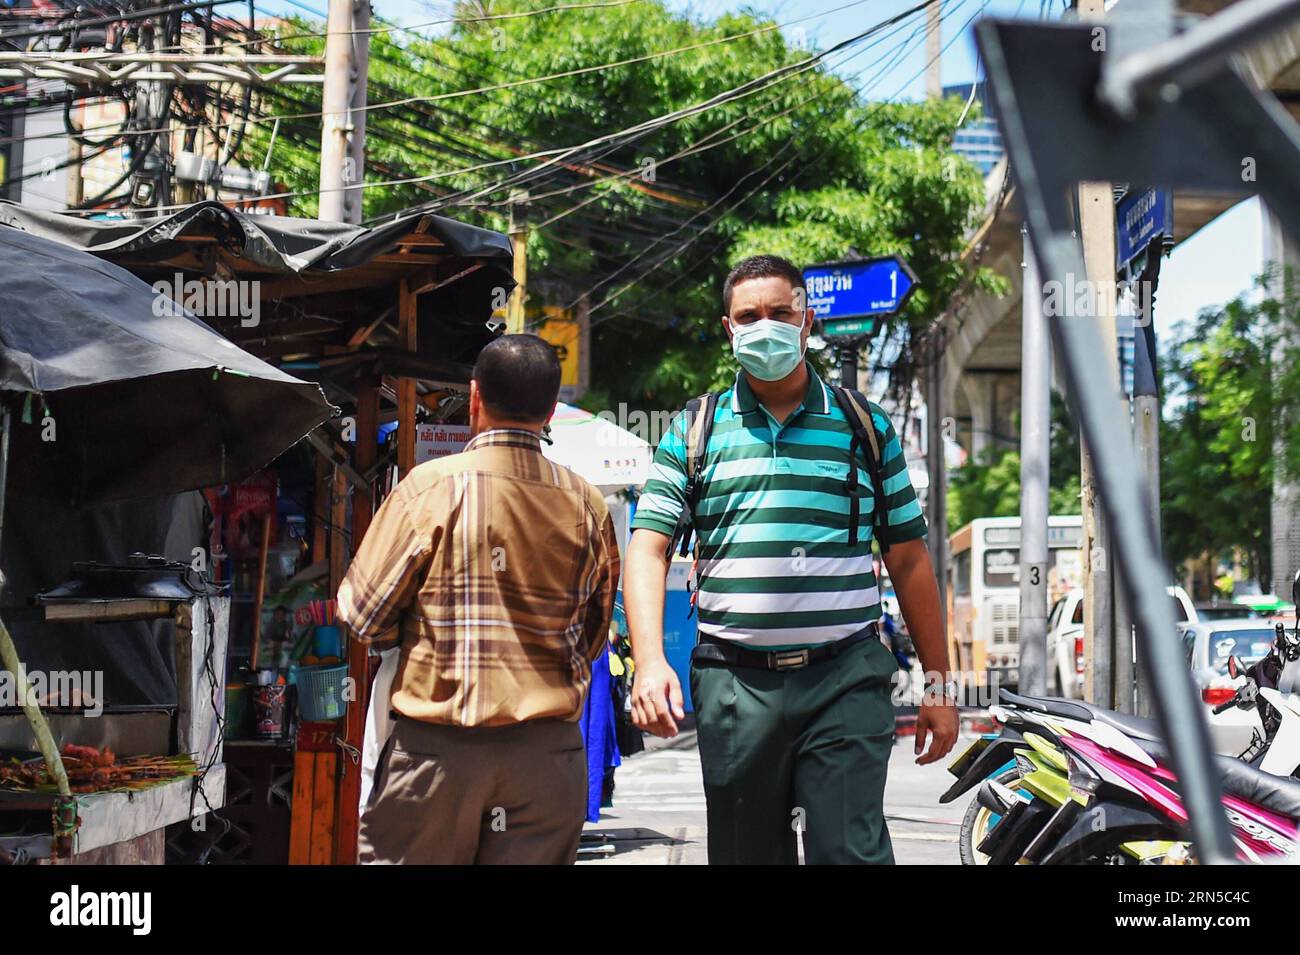 (150620) -- BANGKOK, le 20 juin 2015 -- Un piéton est vu portant un masque facial dans le quartier de Sukhumvit à Bangkok, Thaïlande, le 20 juin 2015. Le ministère de la Santé publique de Thaïlande a confirmé jeudi le premier cas de syndrome respiratoire du Moyen-Orient (mers). A Bangkok, la capitale du pays et un centre de transport international, les citoyens et les voyageurs ont commencé à adopter des méthodes préventives telles que le port de masques protecteurs pour le visage. THAILAND-BANGKOK-mers-DISEASE-PREVENTION LixMangmang PUBLICATIONxNOTxINxCHN 150620 Bangkok juin 20 2015 un piéton EST des lacs portant un masque facial i Banque D'Images